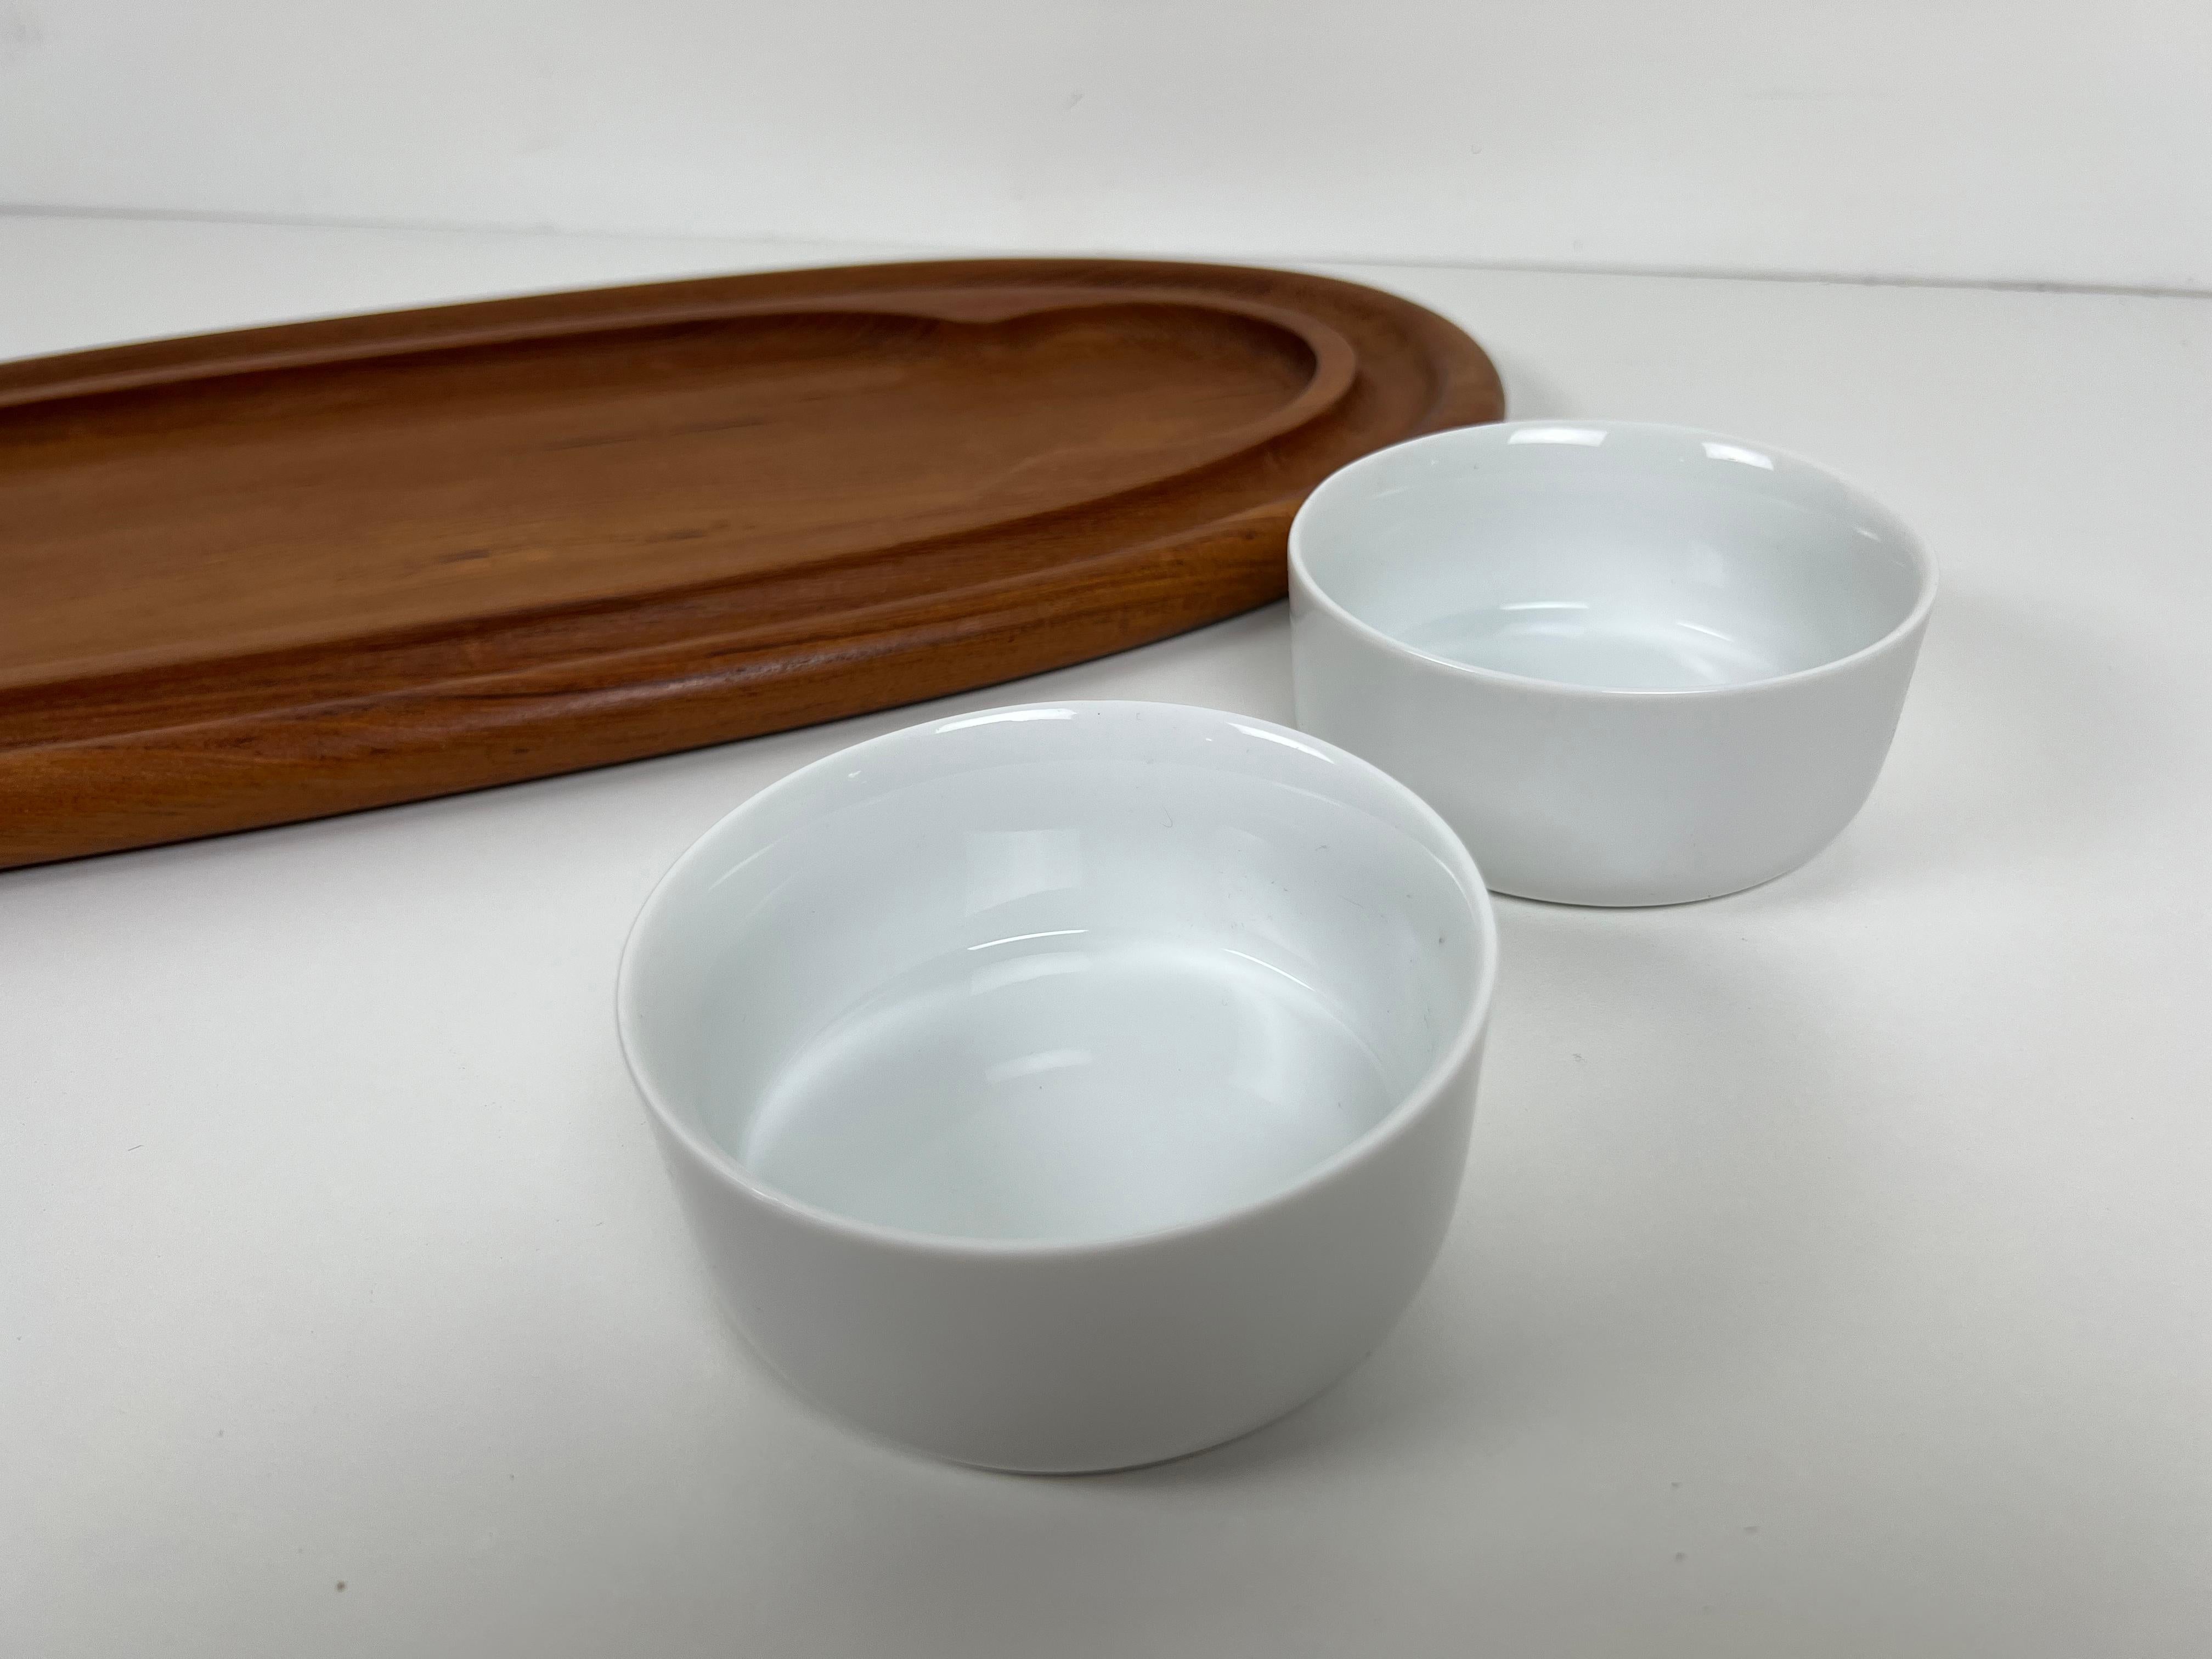 Danish Teak Serving Platter with Bowls by Jens Quistgaard for Dansk